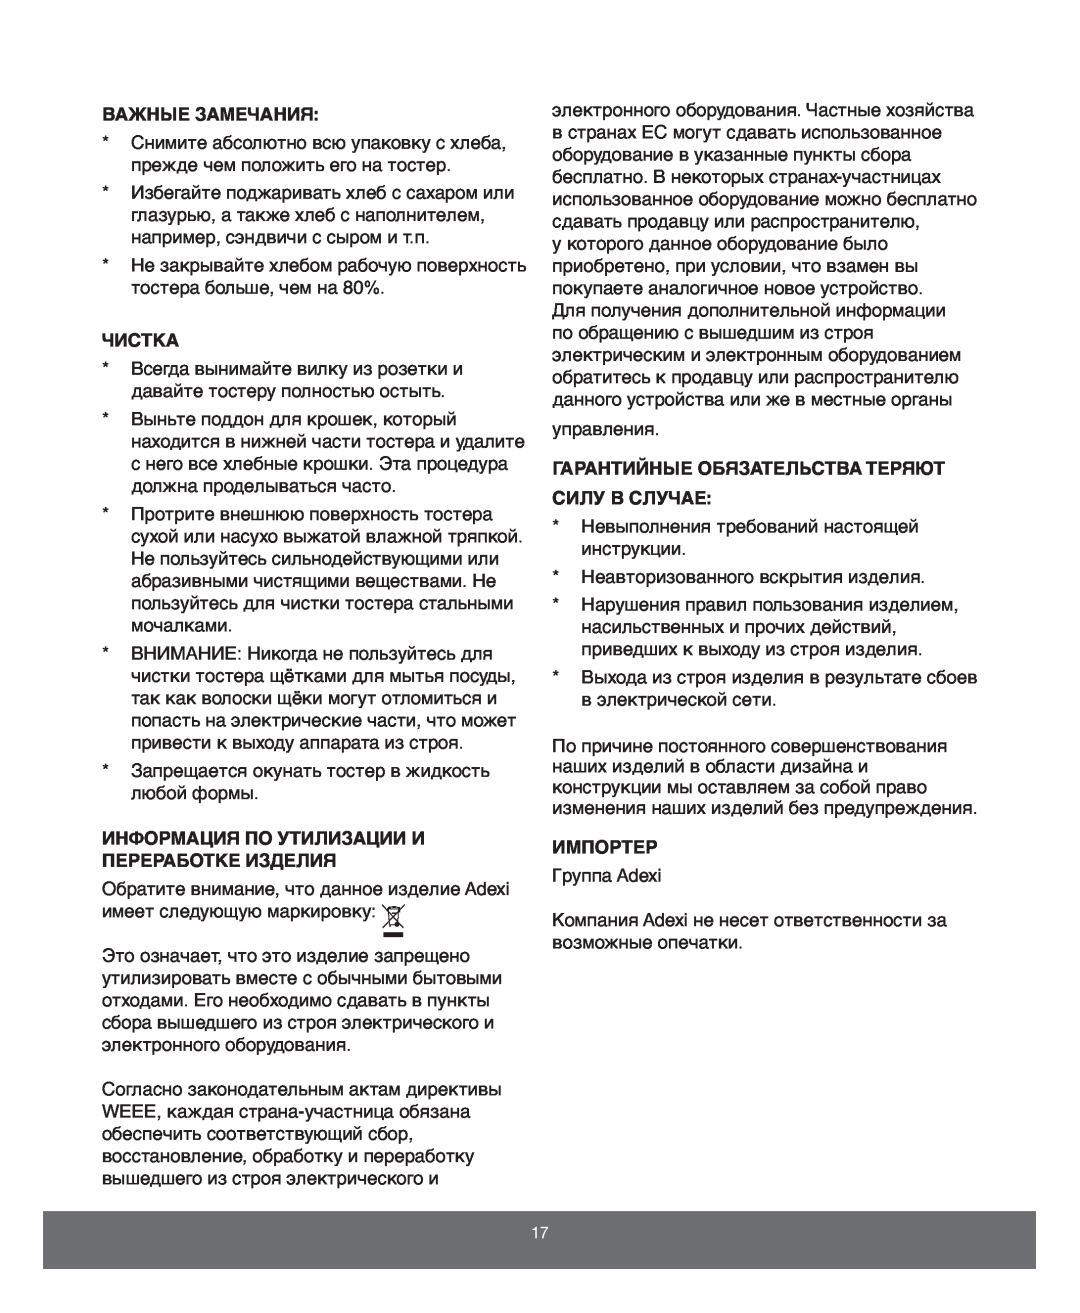 Melissa 743-197 manual Важные Замечания, Чистка, Информация По Утилизации И Переработке Изделия, Импортер 